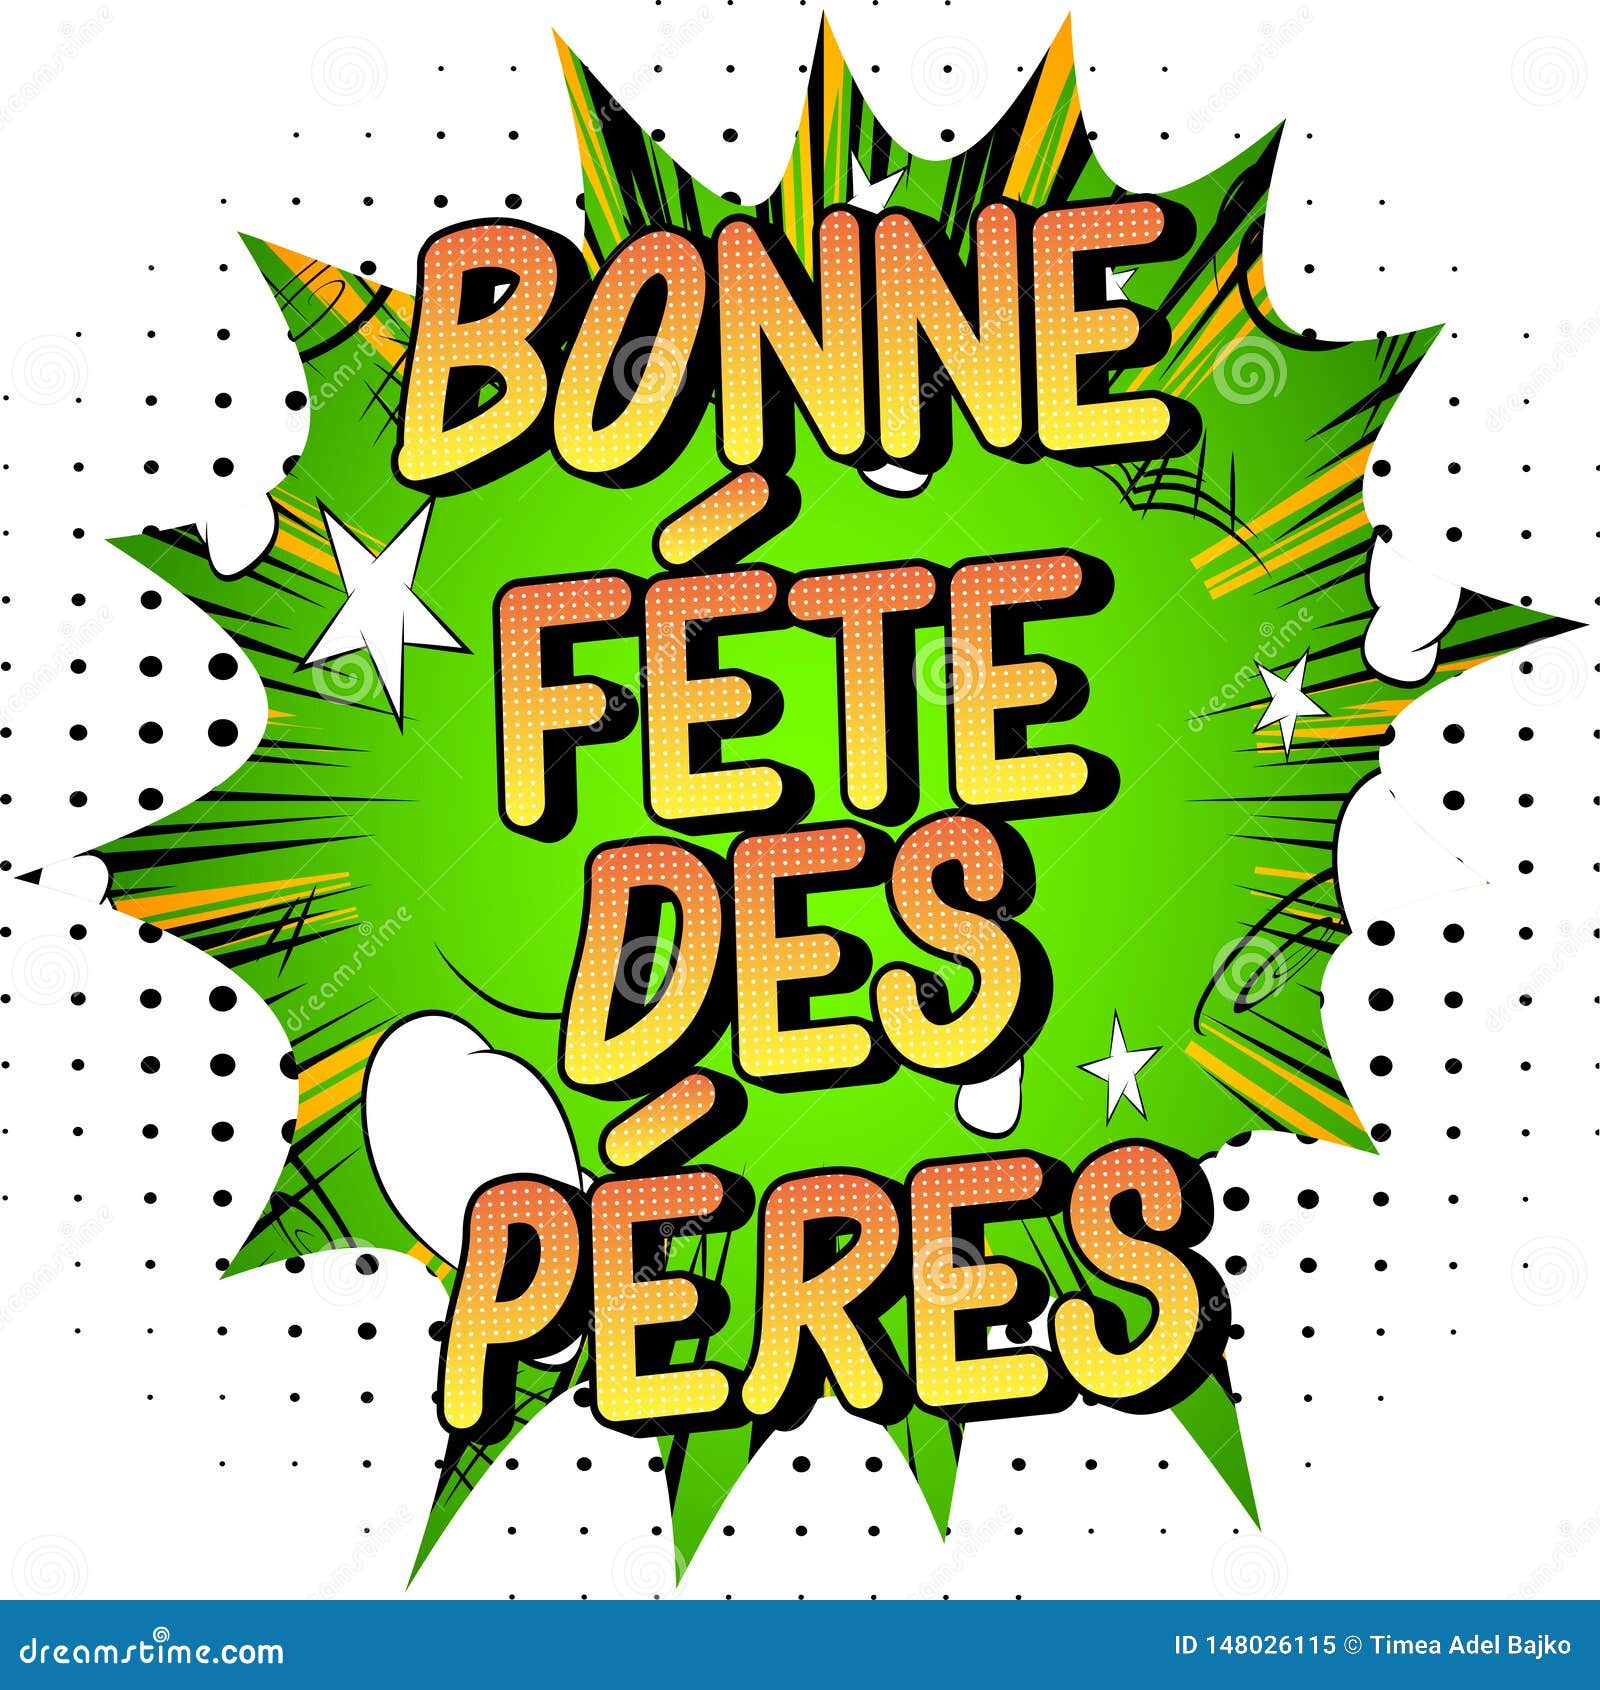 Bonne Fete Des Peres Father S Day In French Illustration De Vecteur Illustration Du Bulle Pere